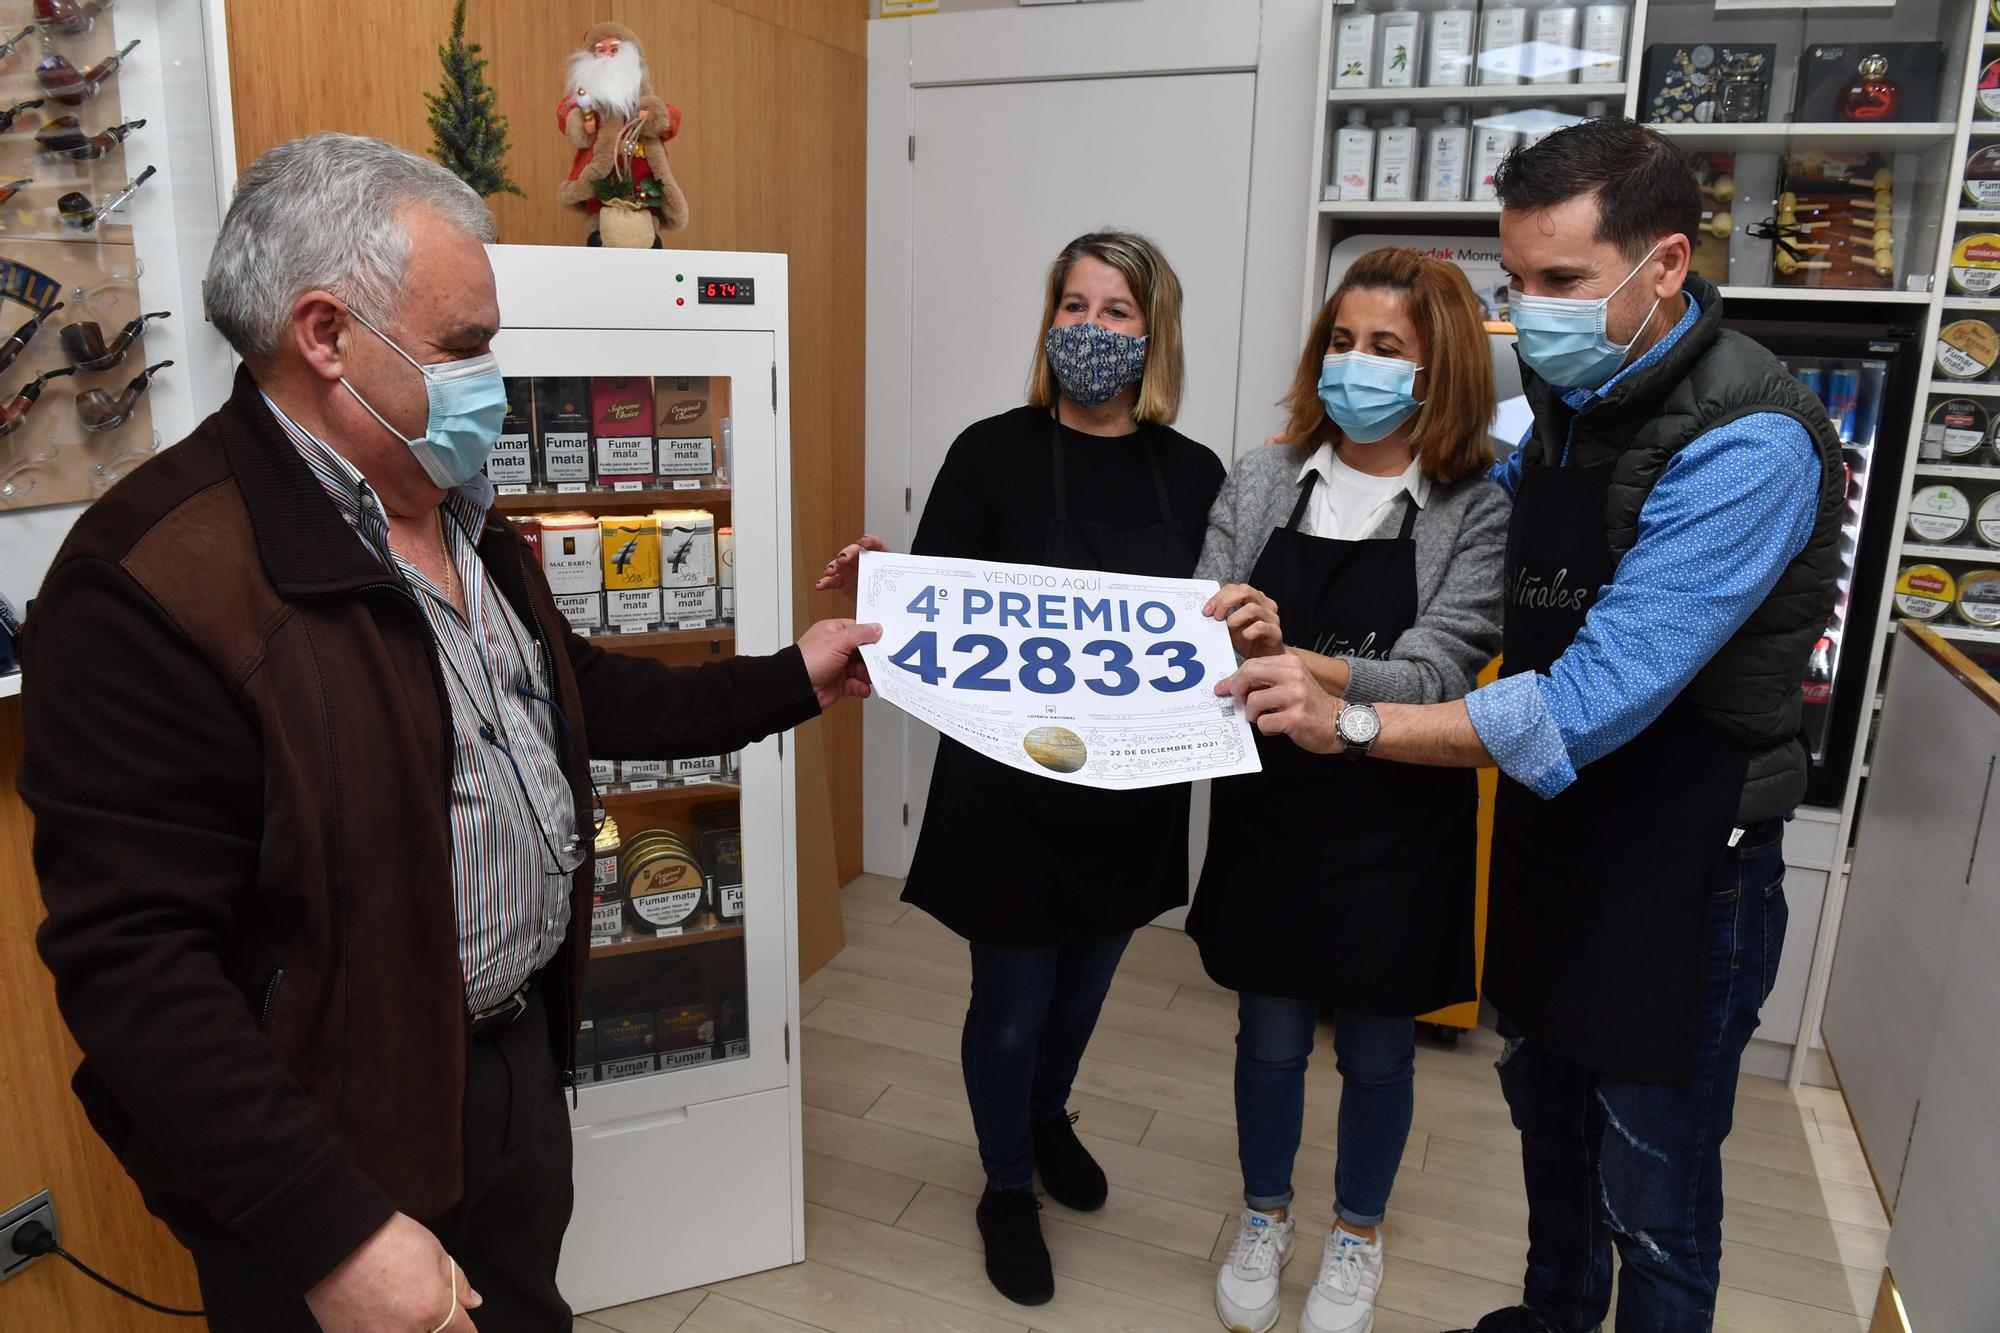 Loteria Navidad 2021 A Coruña: El 42833, un cuarto premio, vendido en Carrefour y en el estanco de la calle Juan Varela